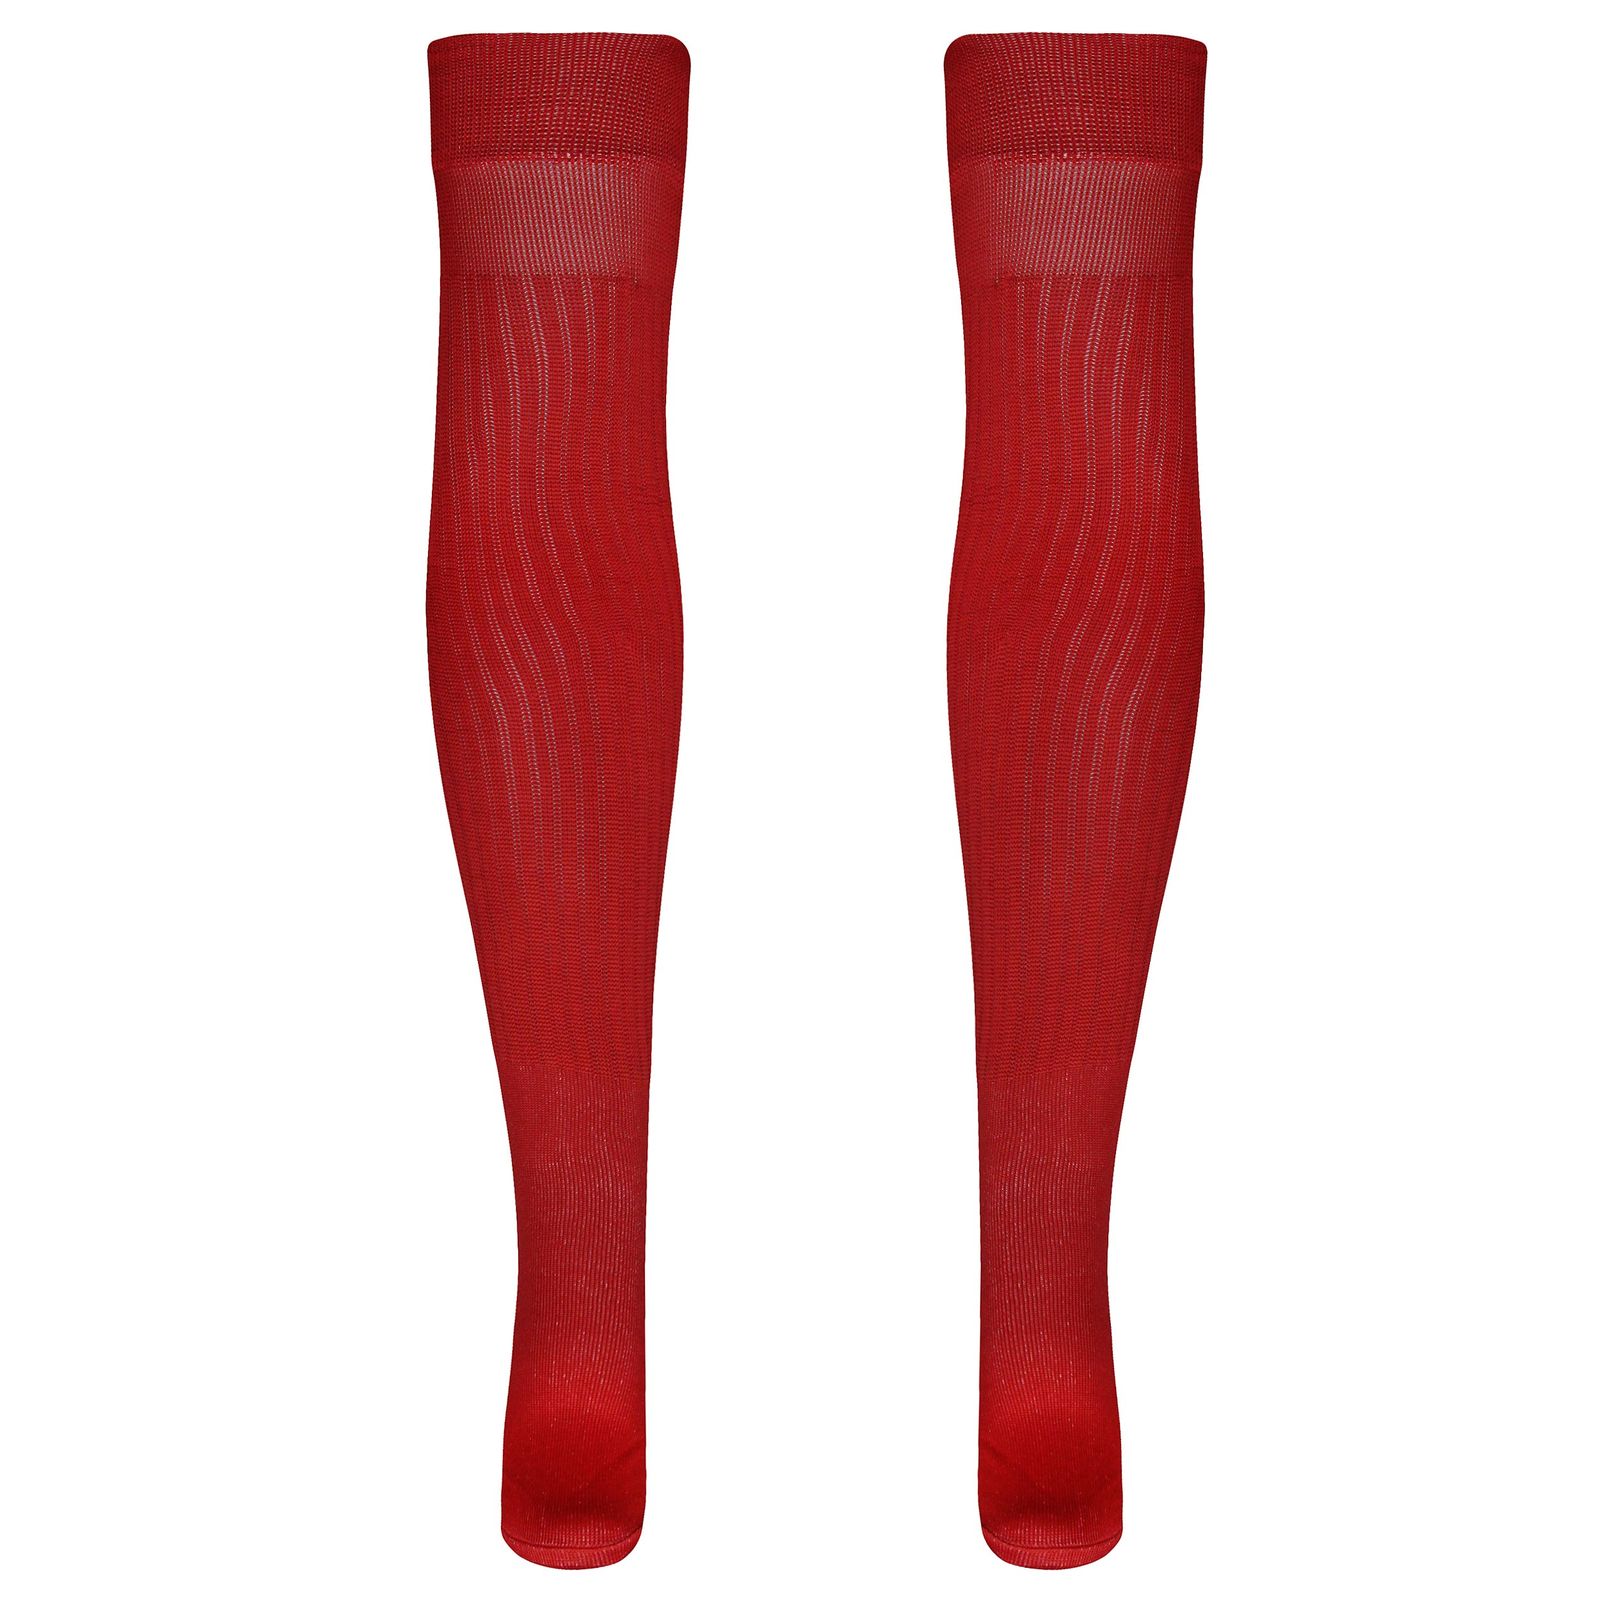 جوراب ورزشی ساق بلند مردانه ماییلدا مدل 4185 رنگ قرمز -  - 1